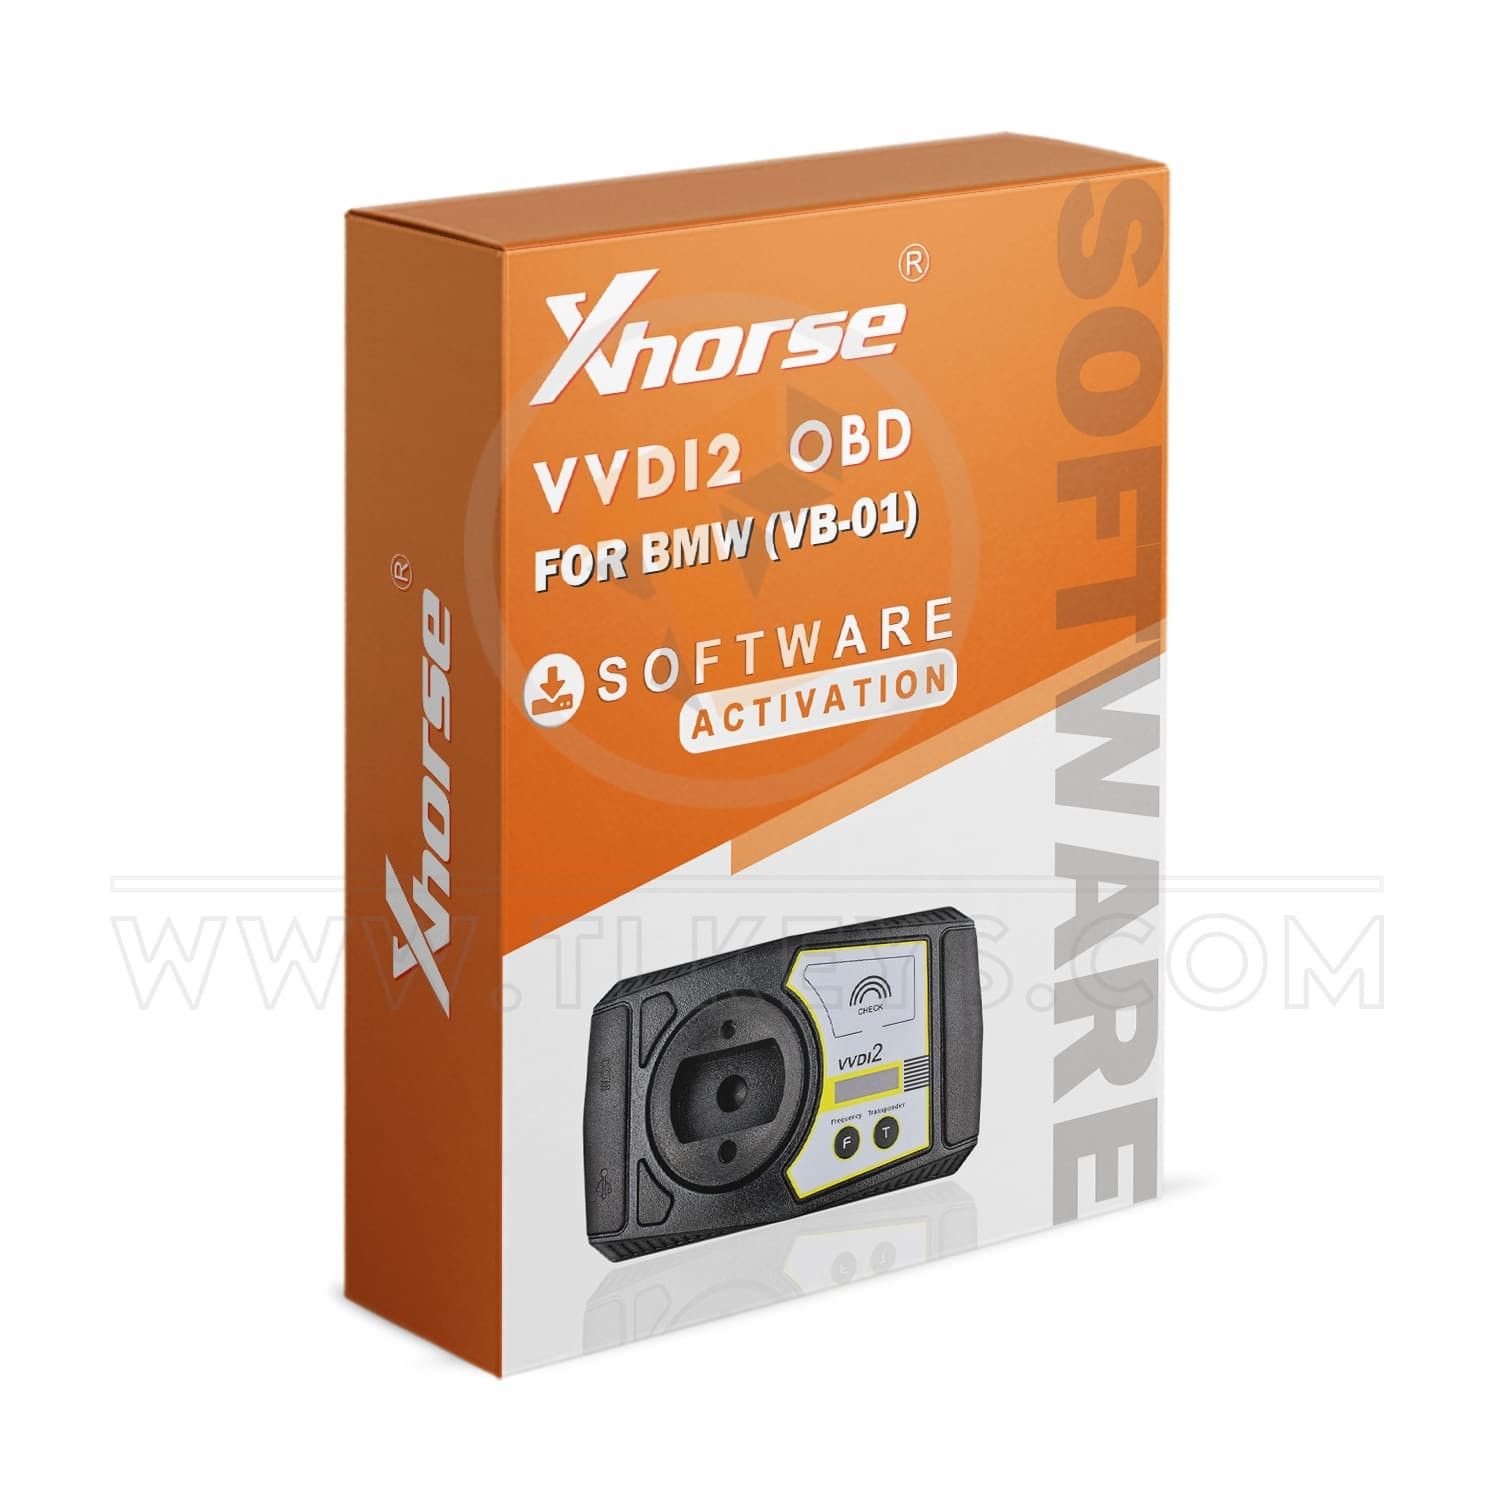 XHORSE VVDI2 OBD Software For BMW (VB-01) software